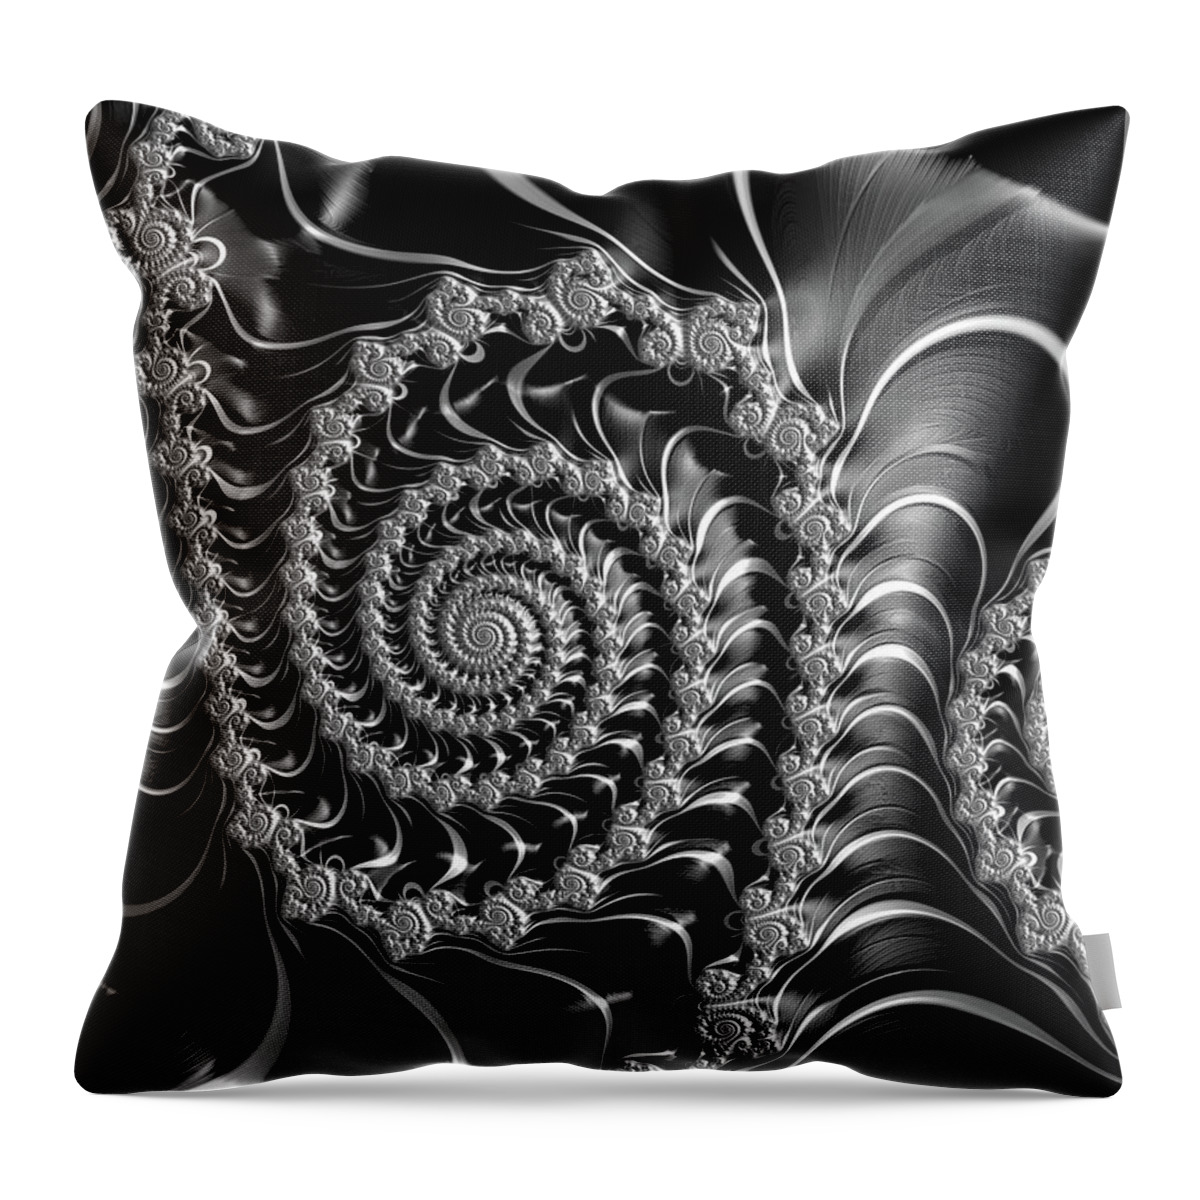 Spirals Throw Pillow featuring the digital art Dark spirals - fractal art black gray white by Matthias Hauser